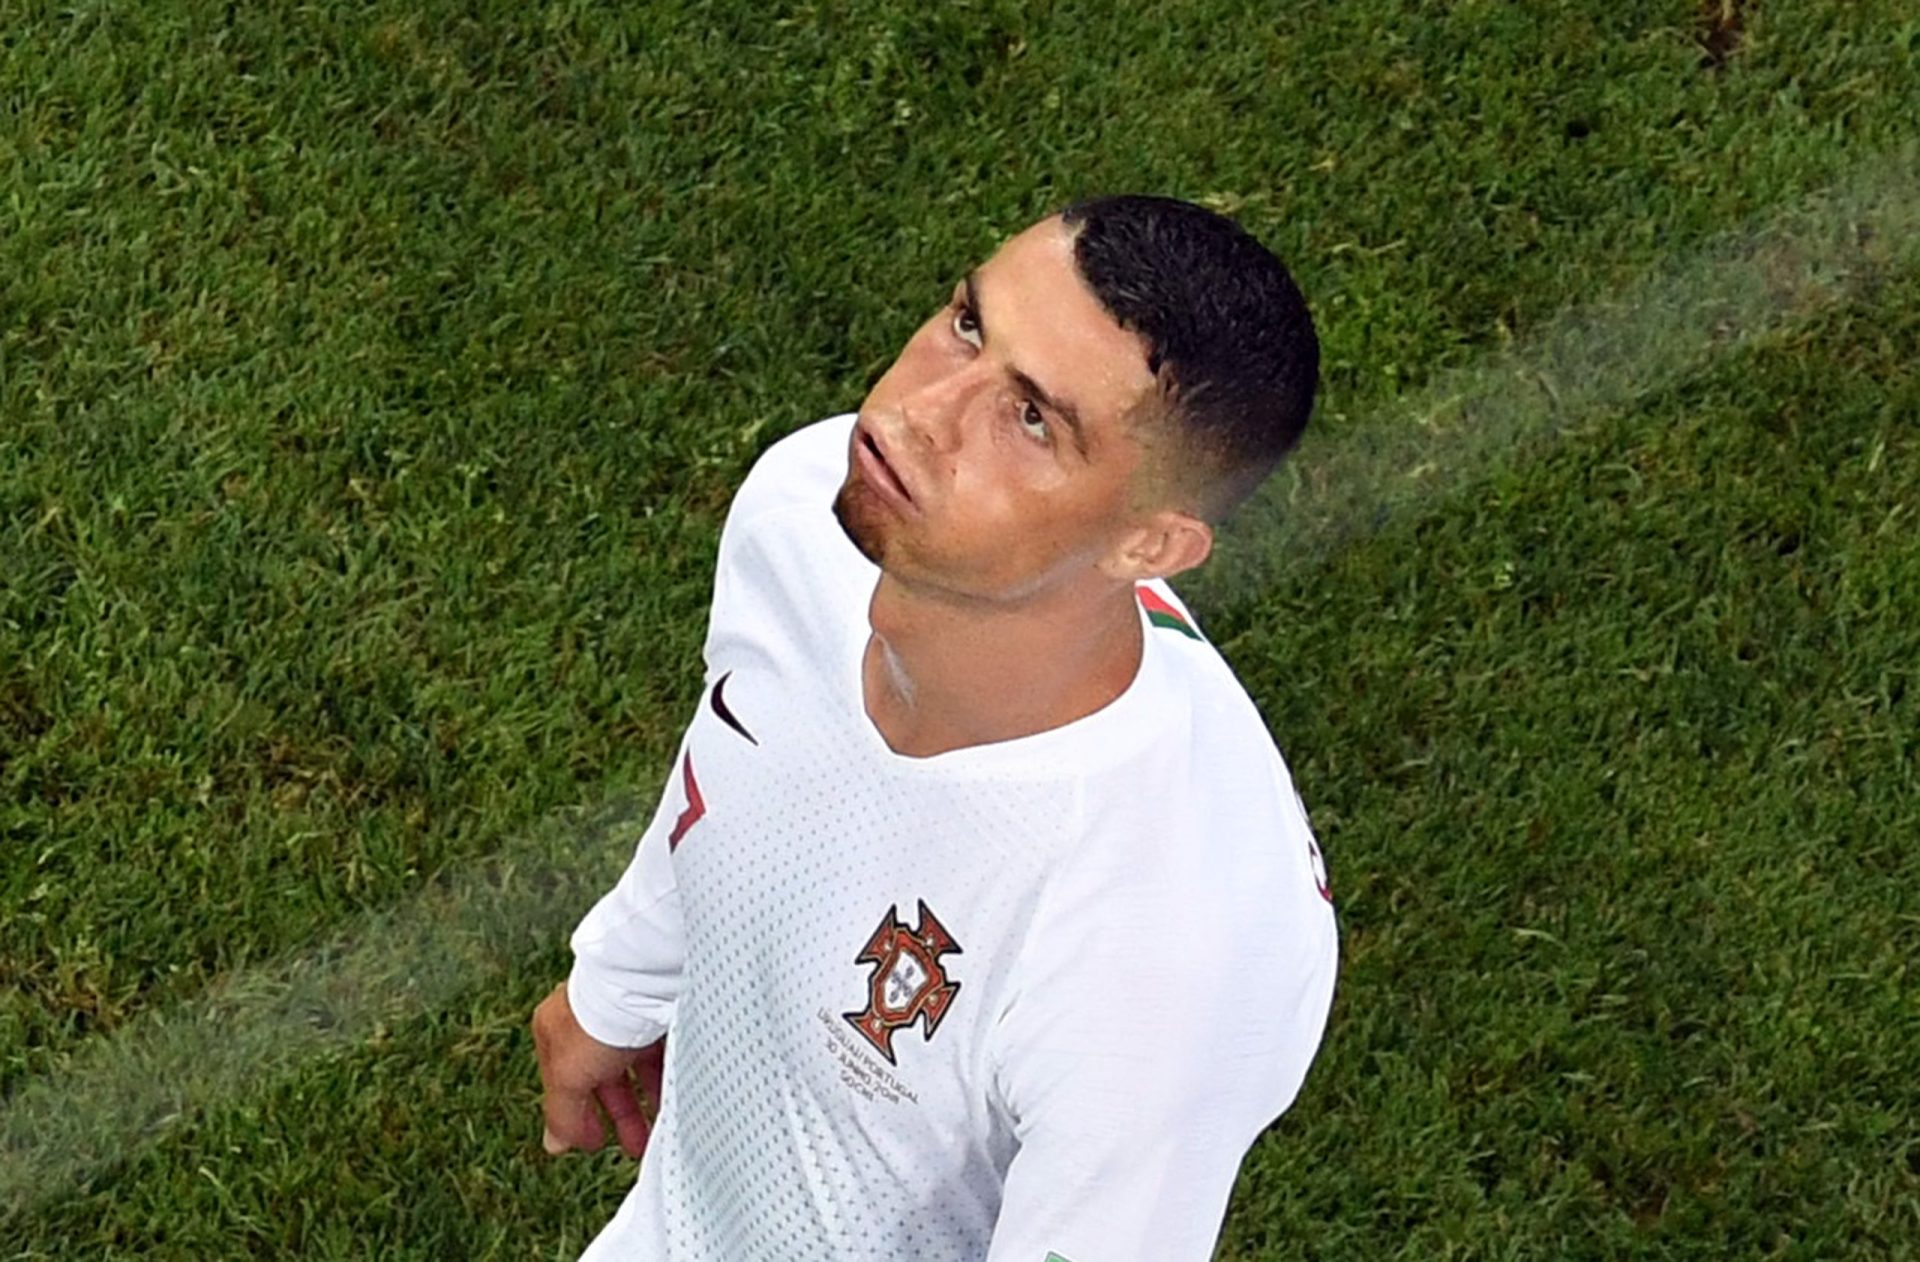 Imprensa italiana diz que Ronaldo acredita estar a ser alvo de plano do Real Madrid para sabotar a sua carreira